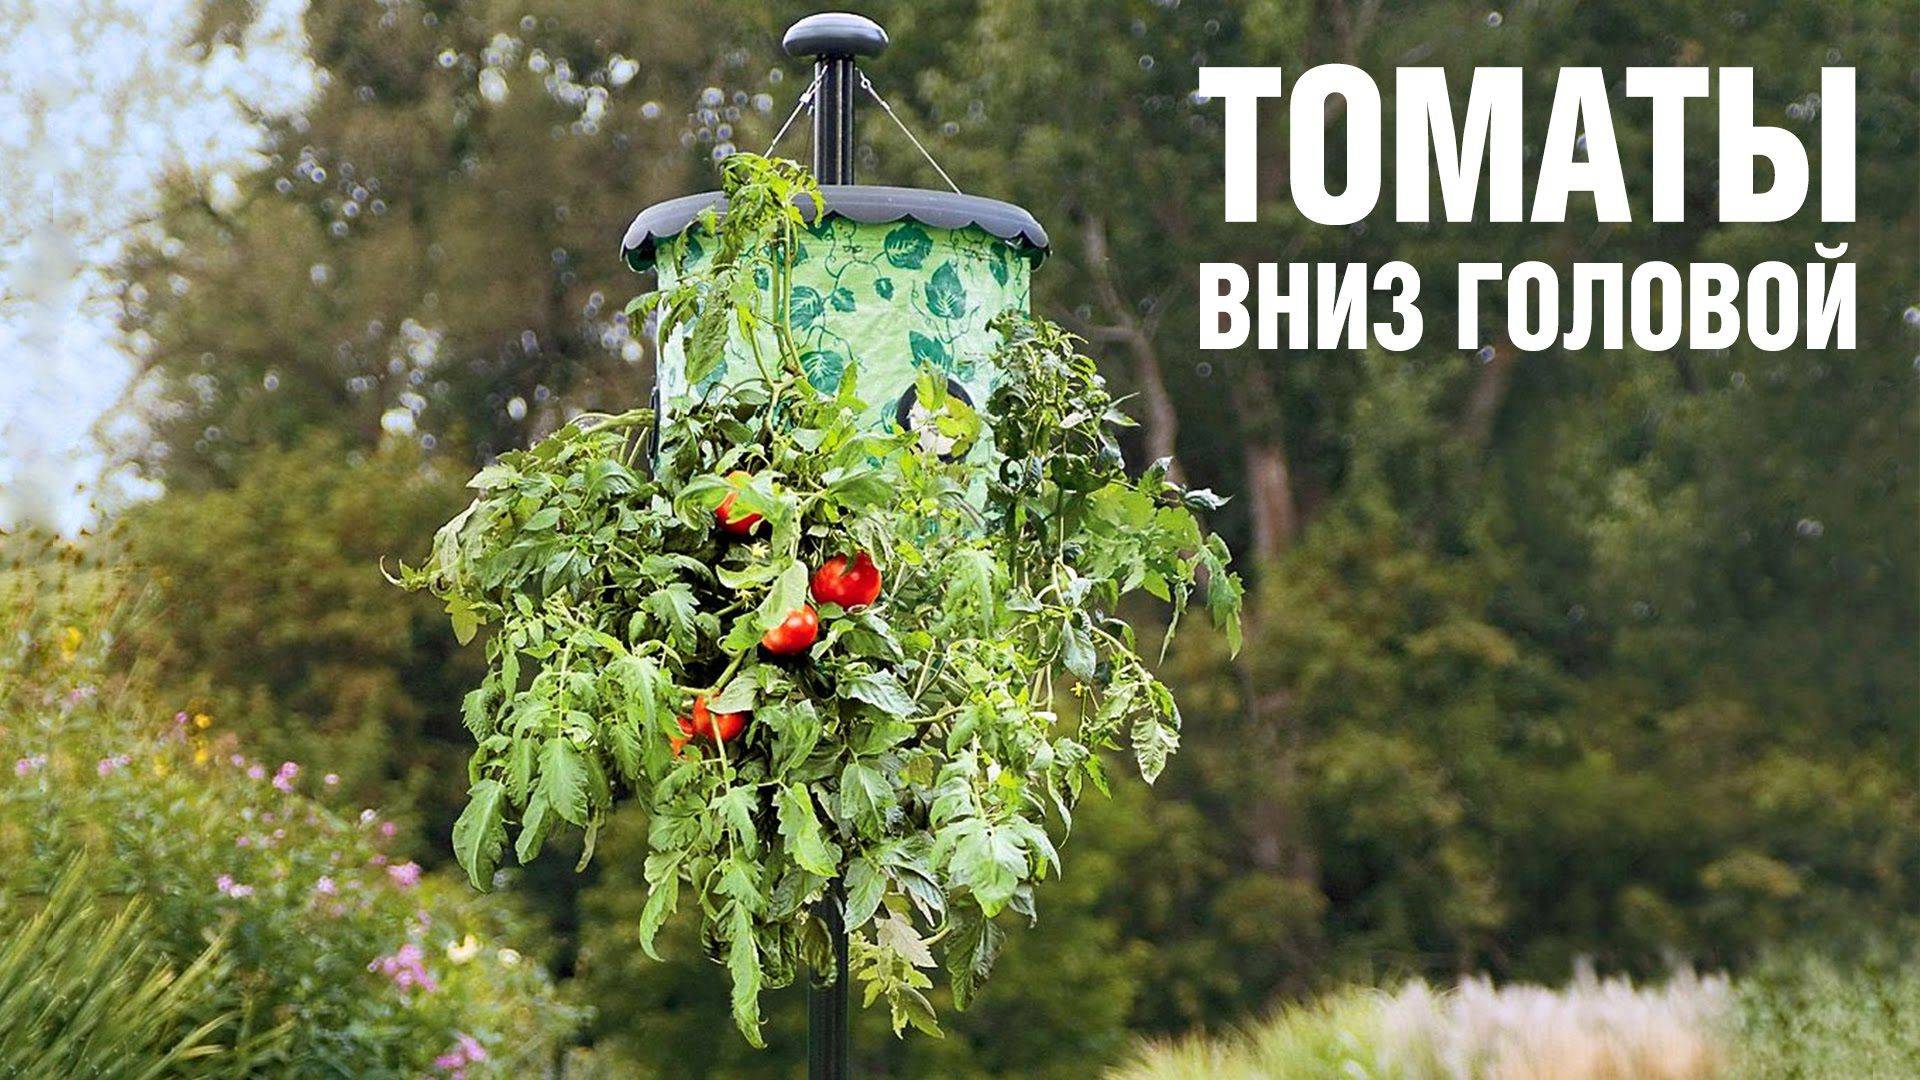 Вверх корнями — необычный способ выращивания томатов